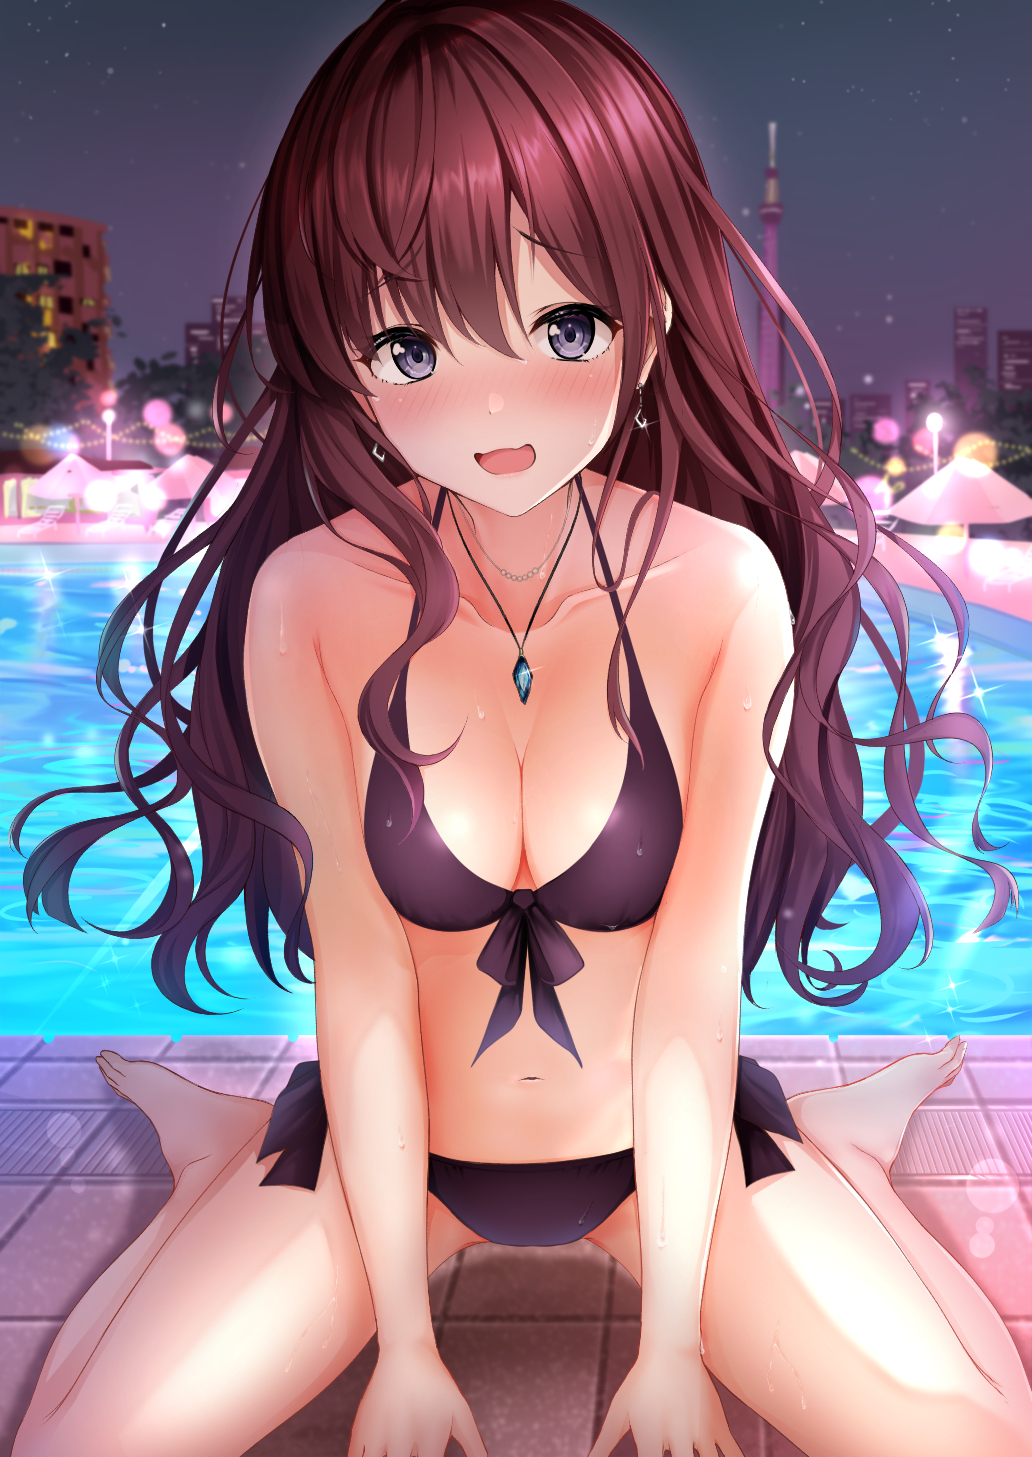 Anime 1032x1457 anime anime girls bikini open mouth necklace kneeling long hair brunette gray eyes blushing cleavage swimming pool artwork Karu THE iDOLM@STER Ichinose Shiki